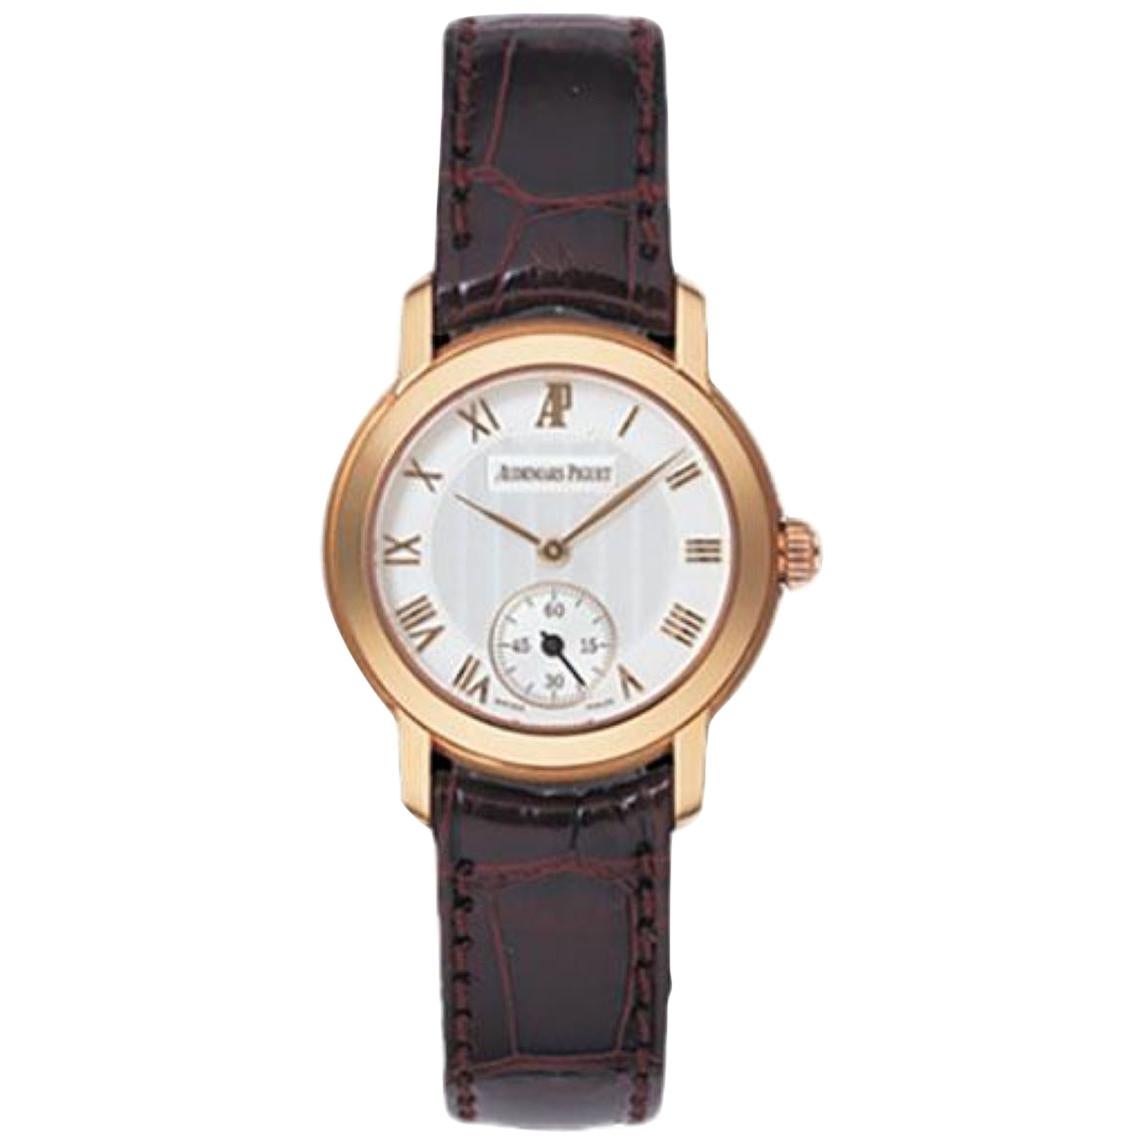 Audemars Piguet Jules Audemars Pink Gold Men's Watch-77208OR.OO.A067CR.01 For Sale